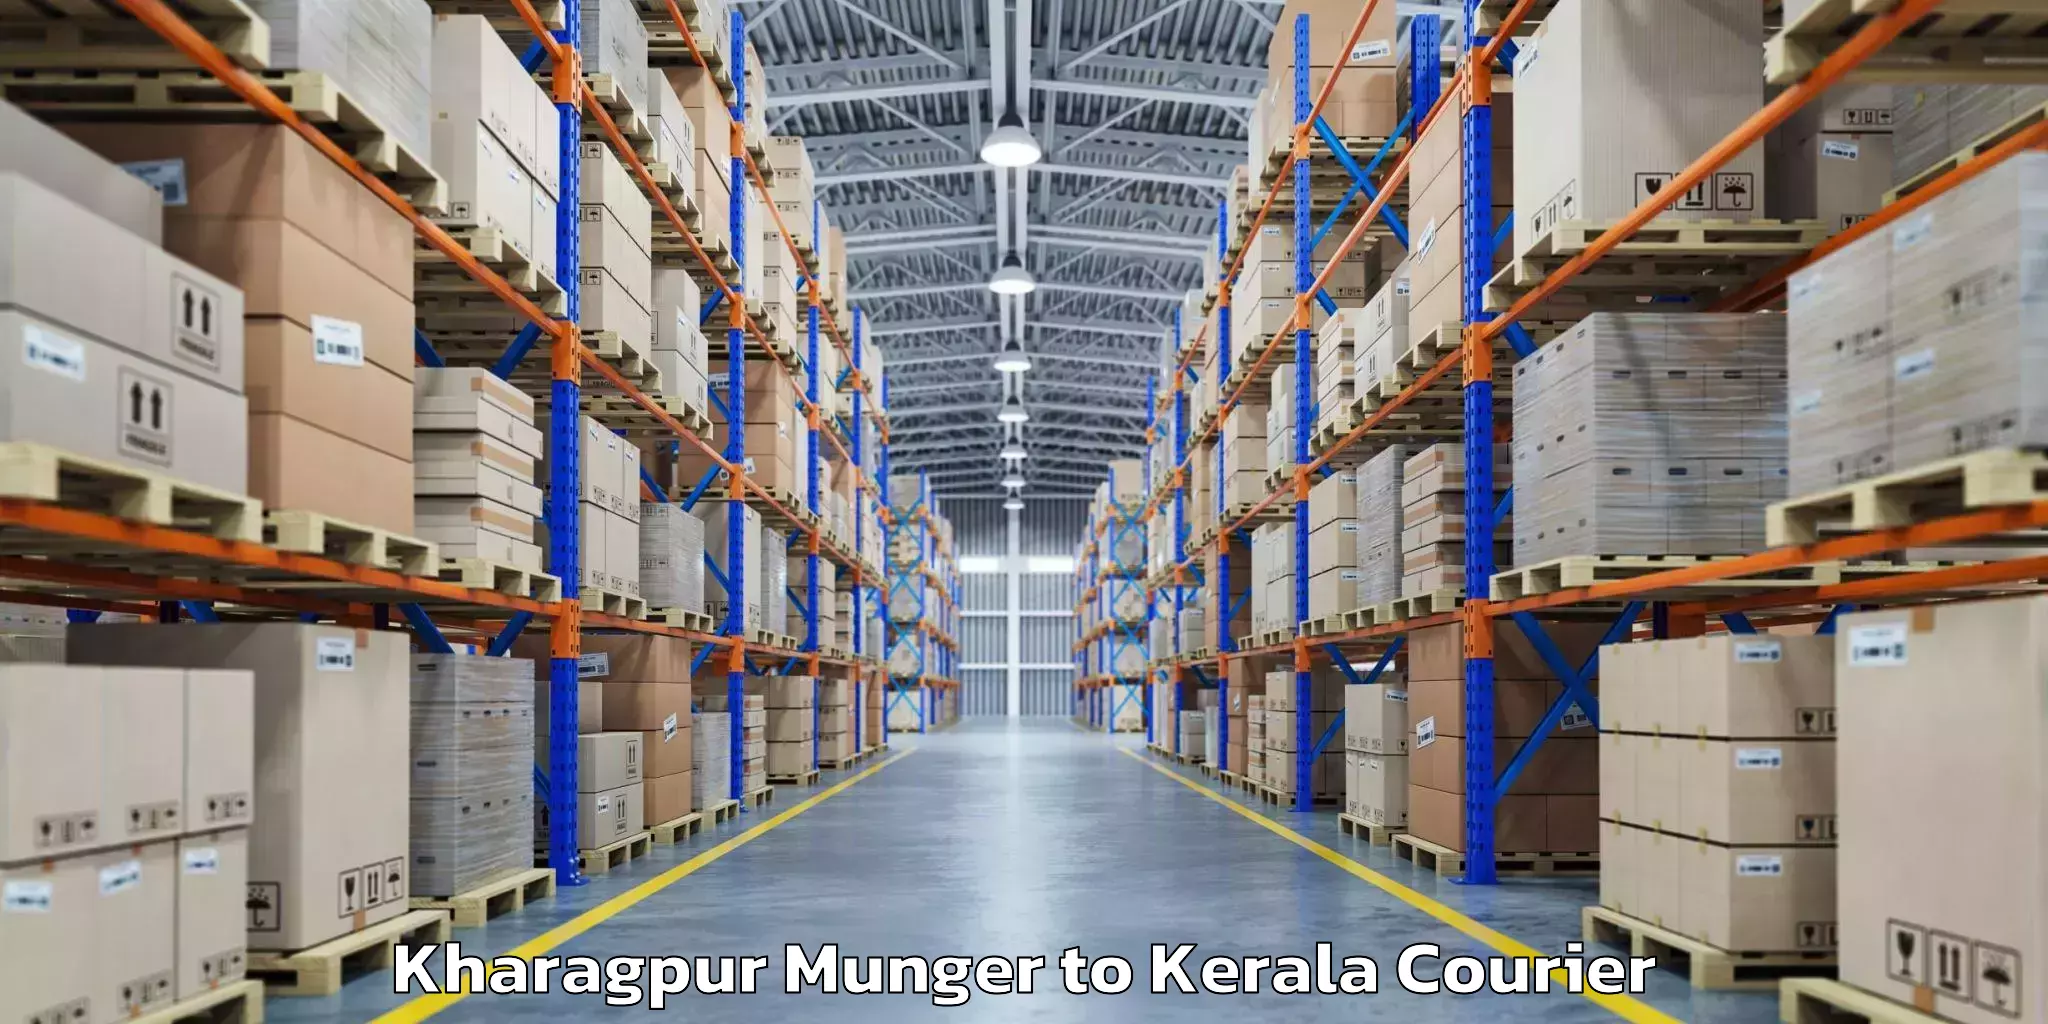 Baggage shipping service Kharagpur Munger to Alakode